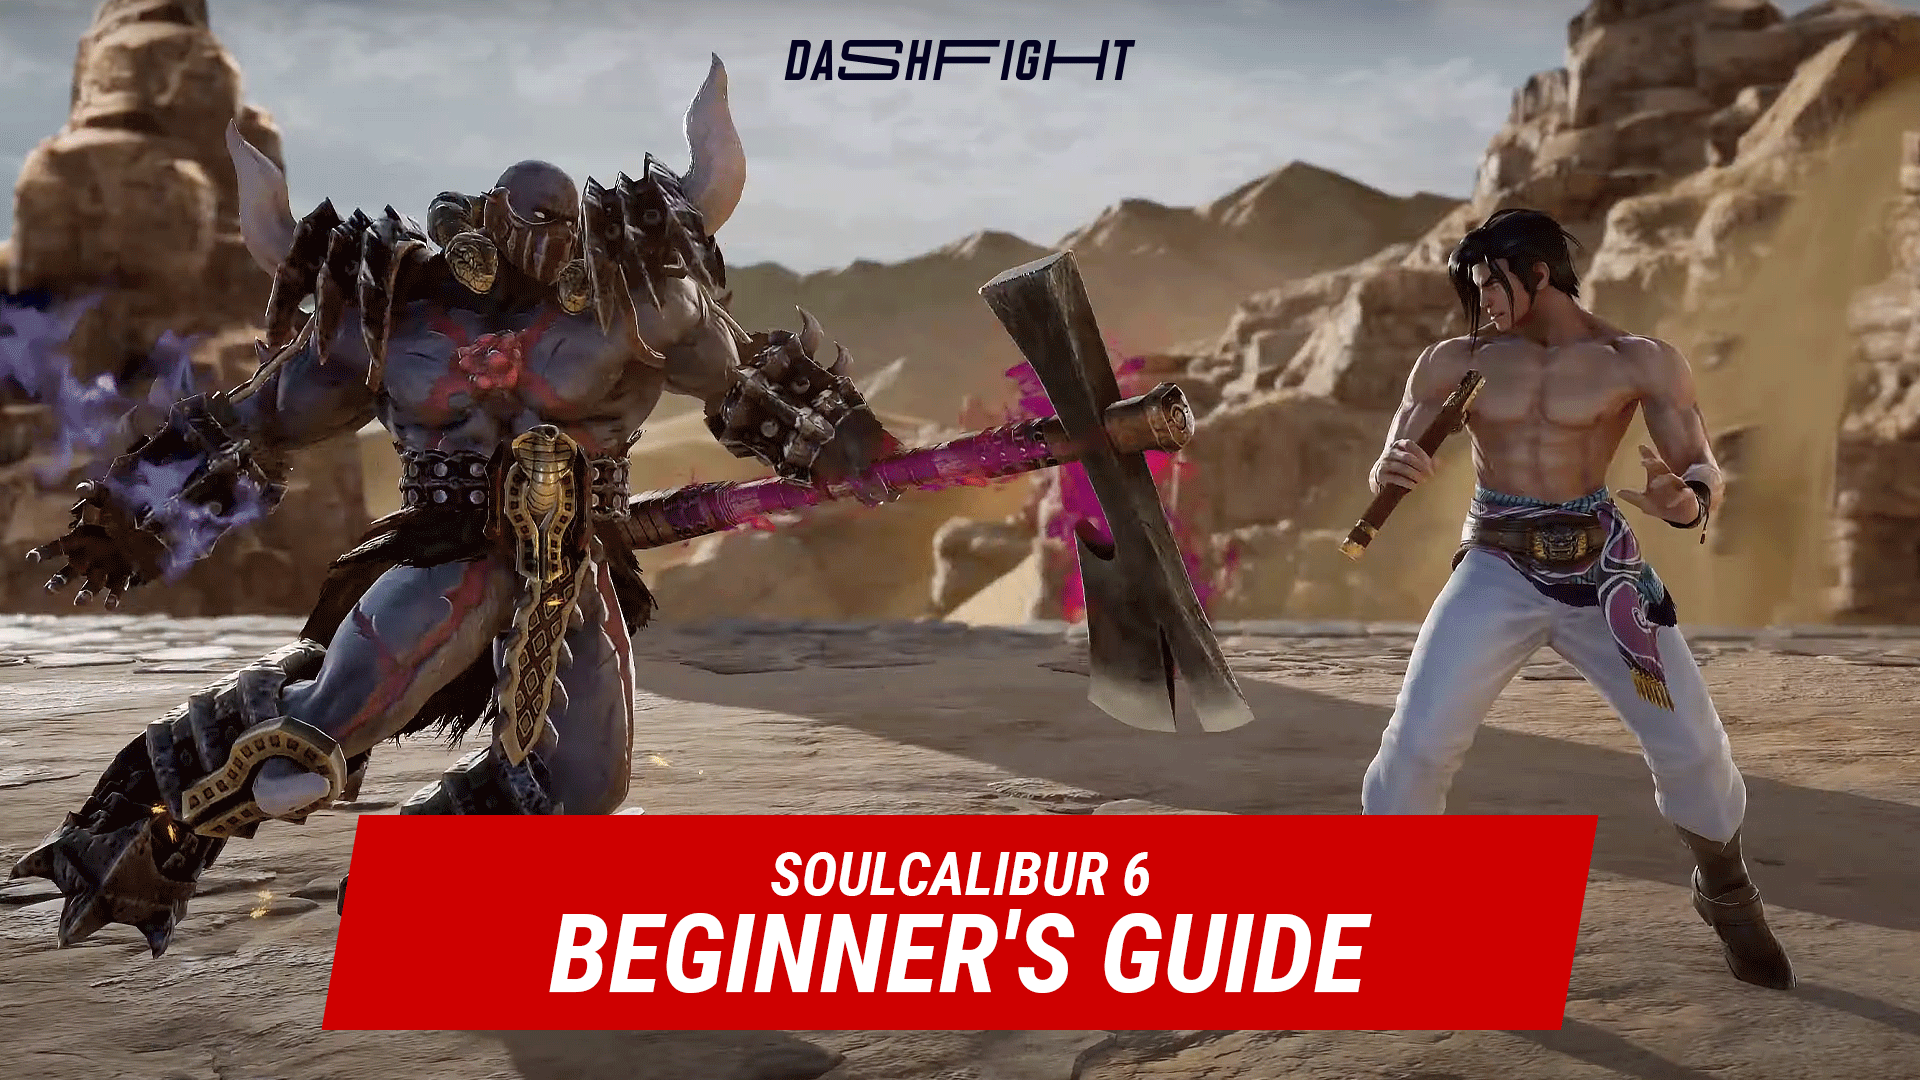 Soulcalibur 6 Beginner's Guide